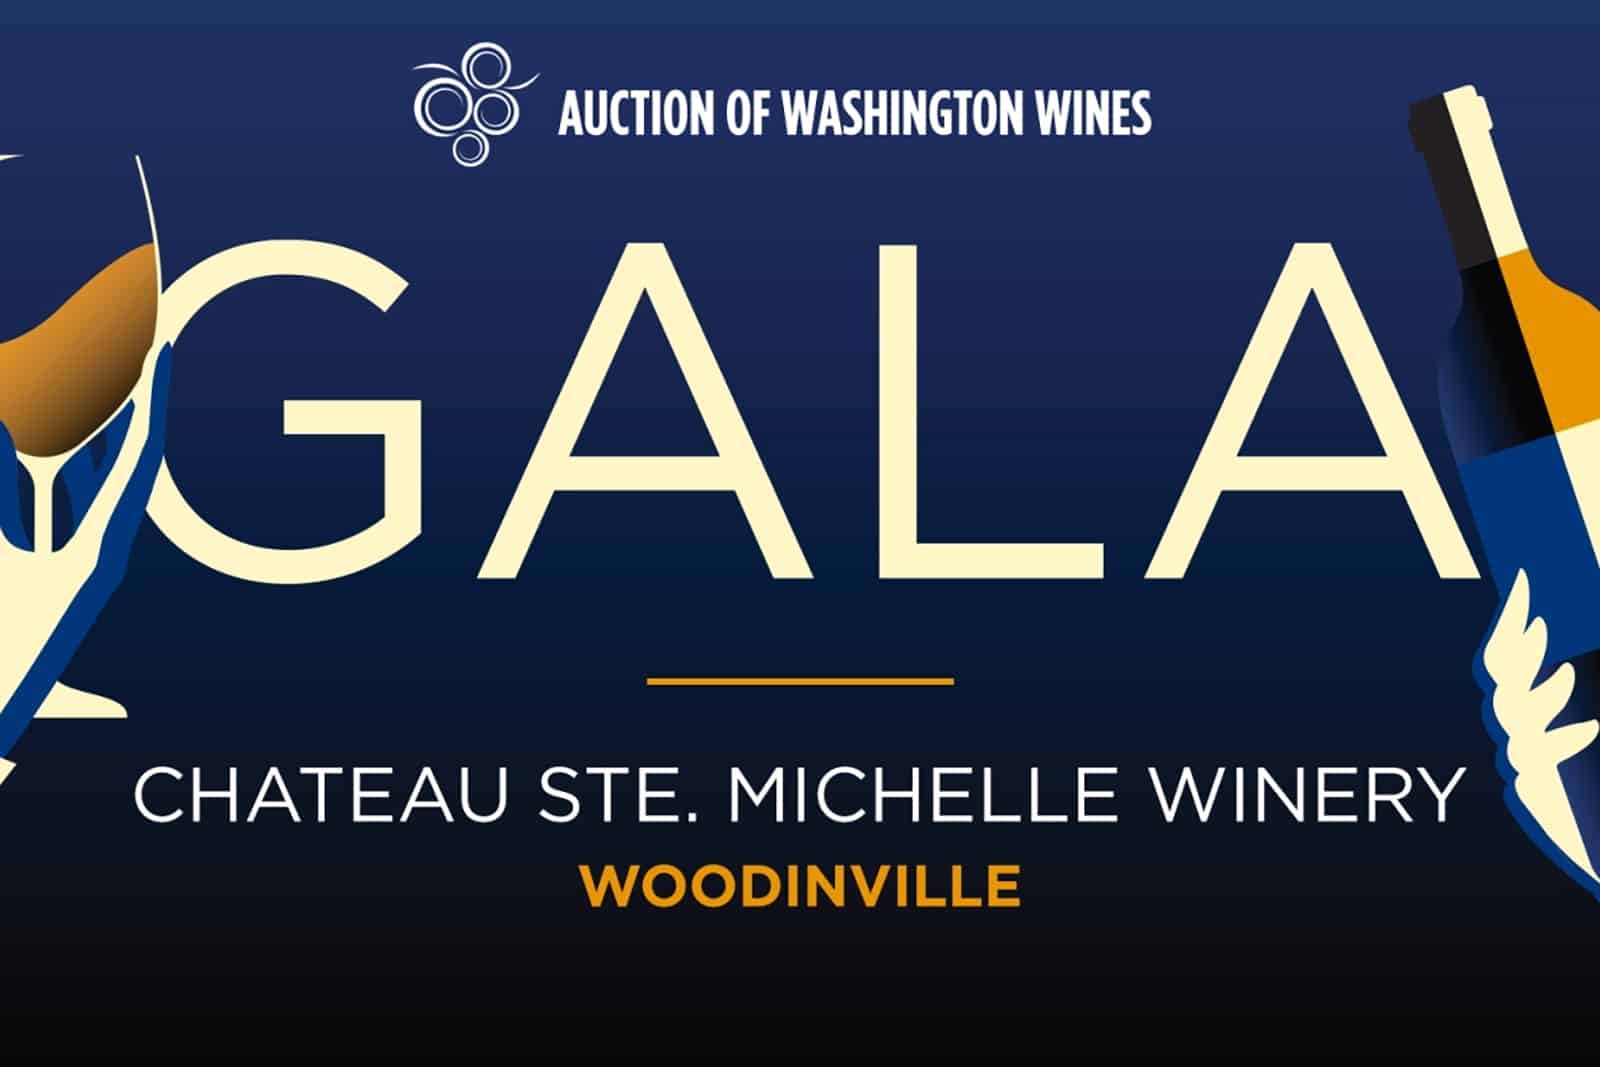 Auction of Washington Wines Gala logo